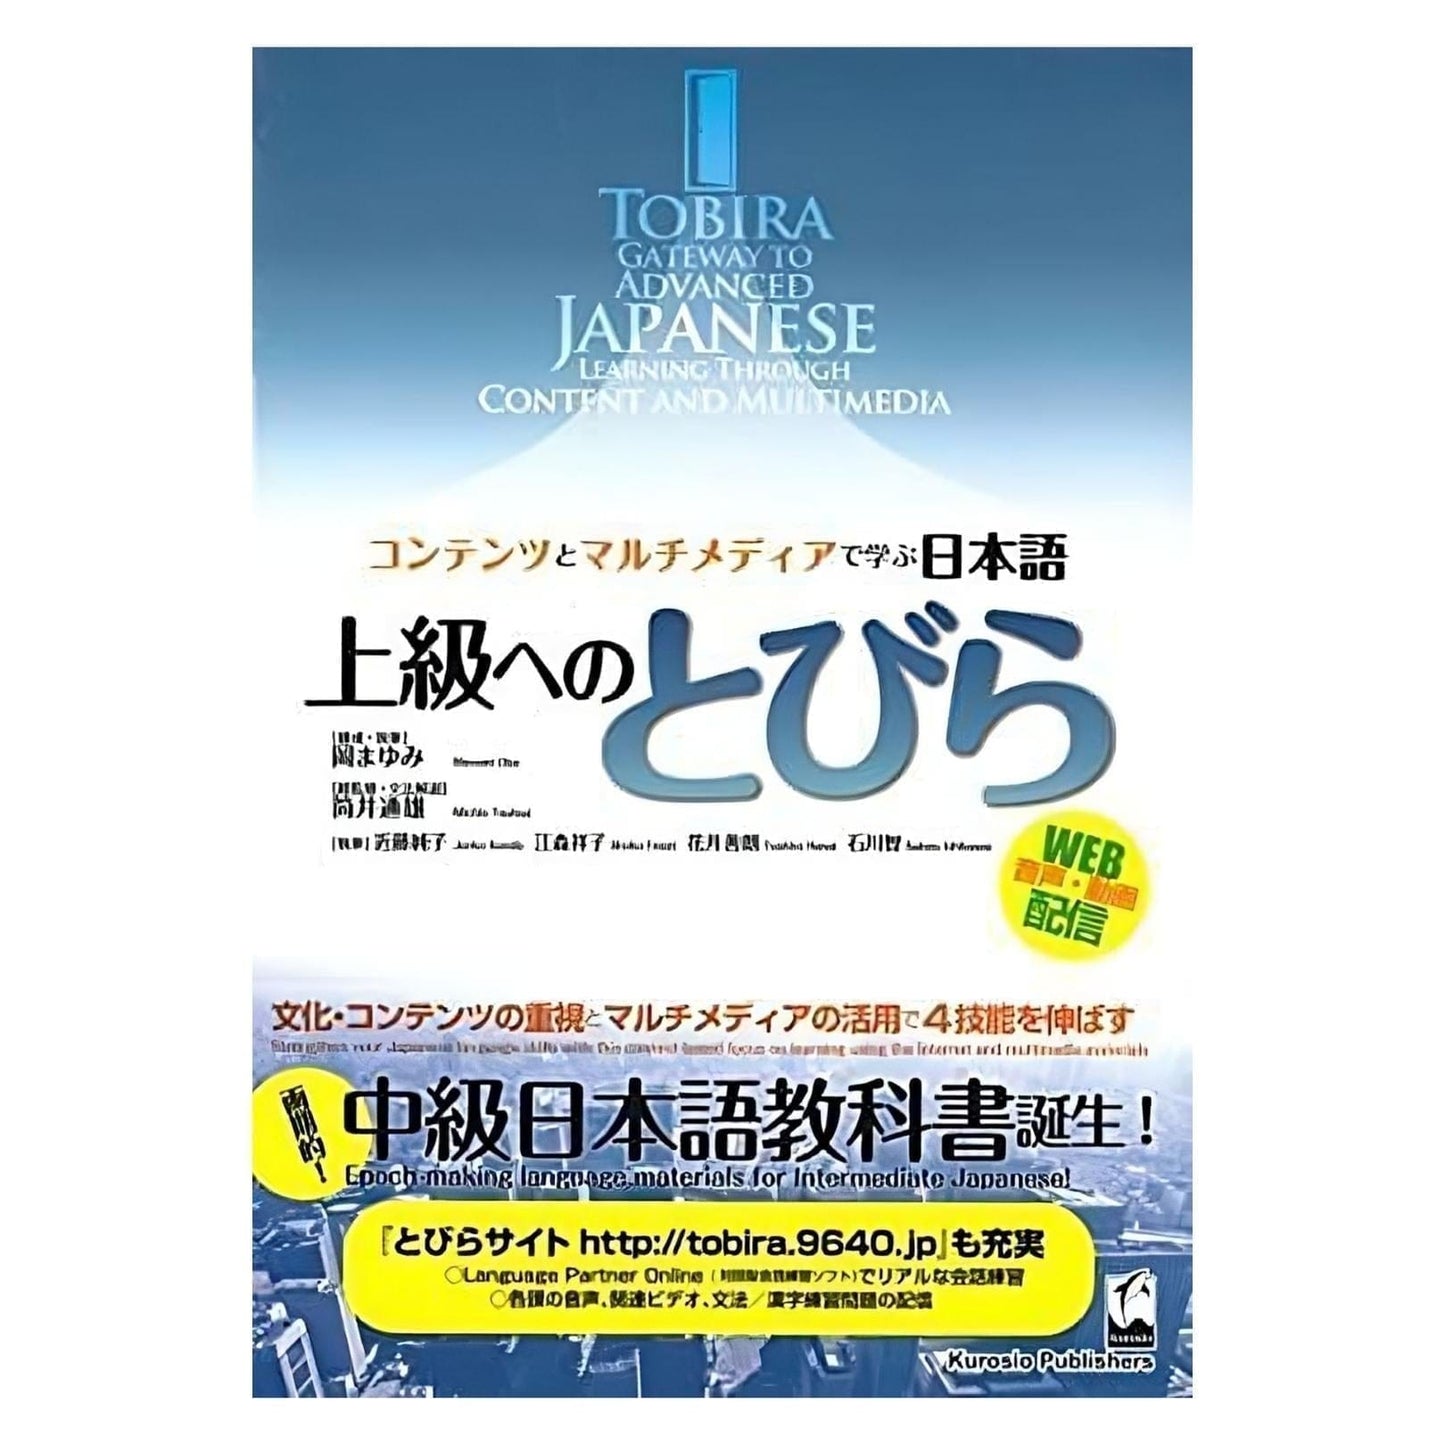 Manual Japonés | Tobira Gateway al japonés avanzado ChitoroShop